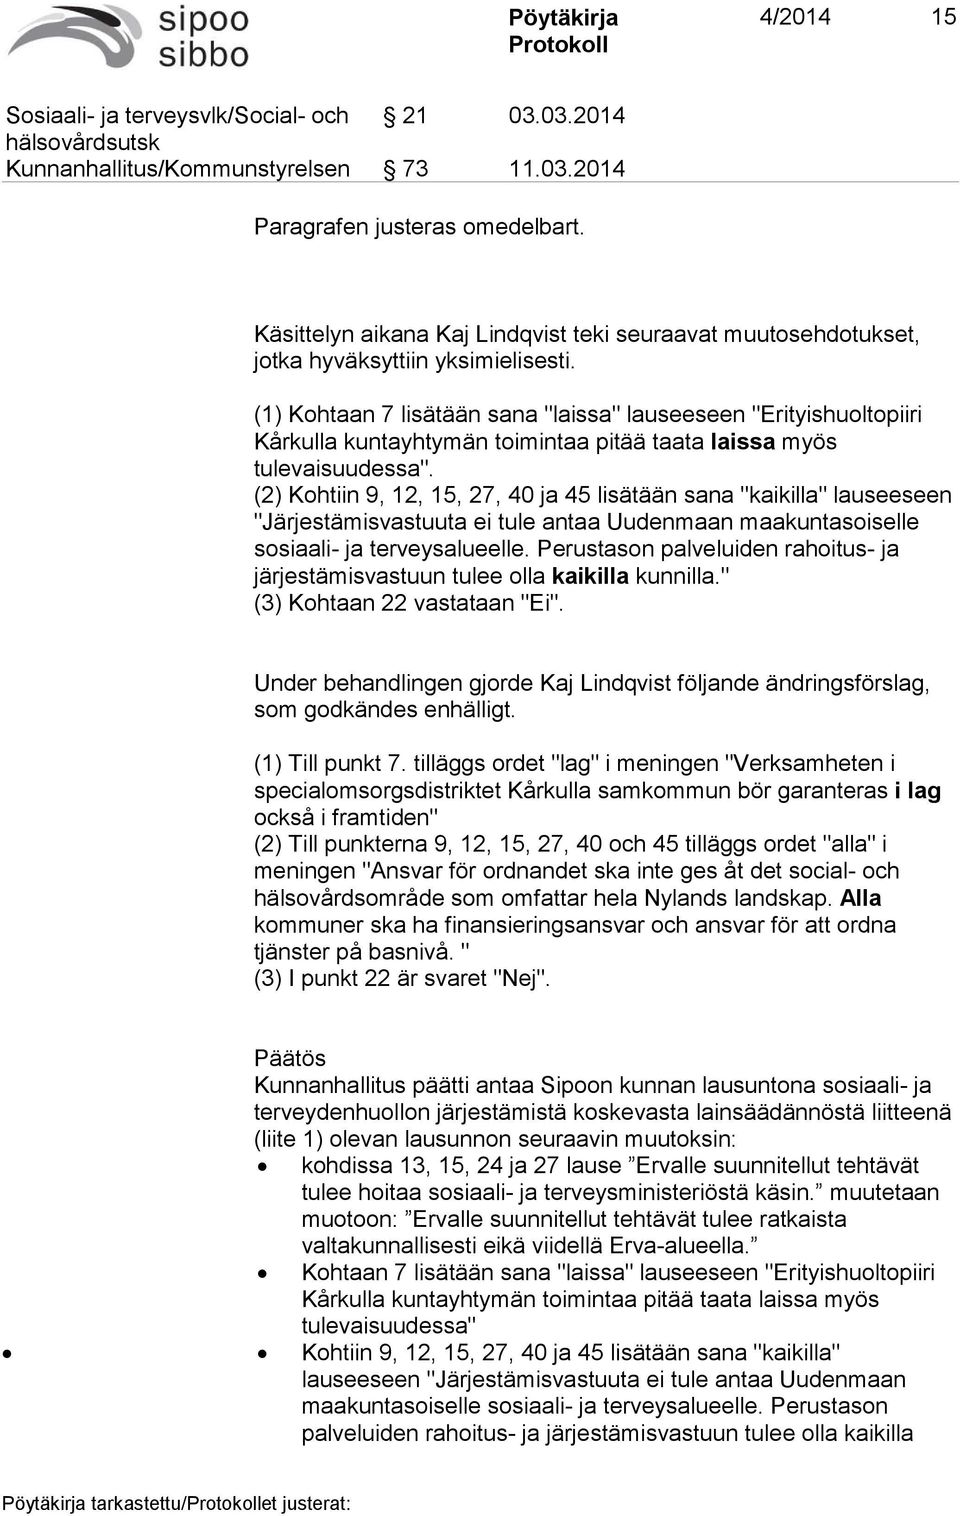 (1) Kohtaan 7 lisätään sana "laissa" lauseeseen "Erityishuoltopiiri Kårkulla kuntayhtymän toimintaa pitää taata laissa myös tulevaisuudessa".